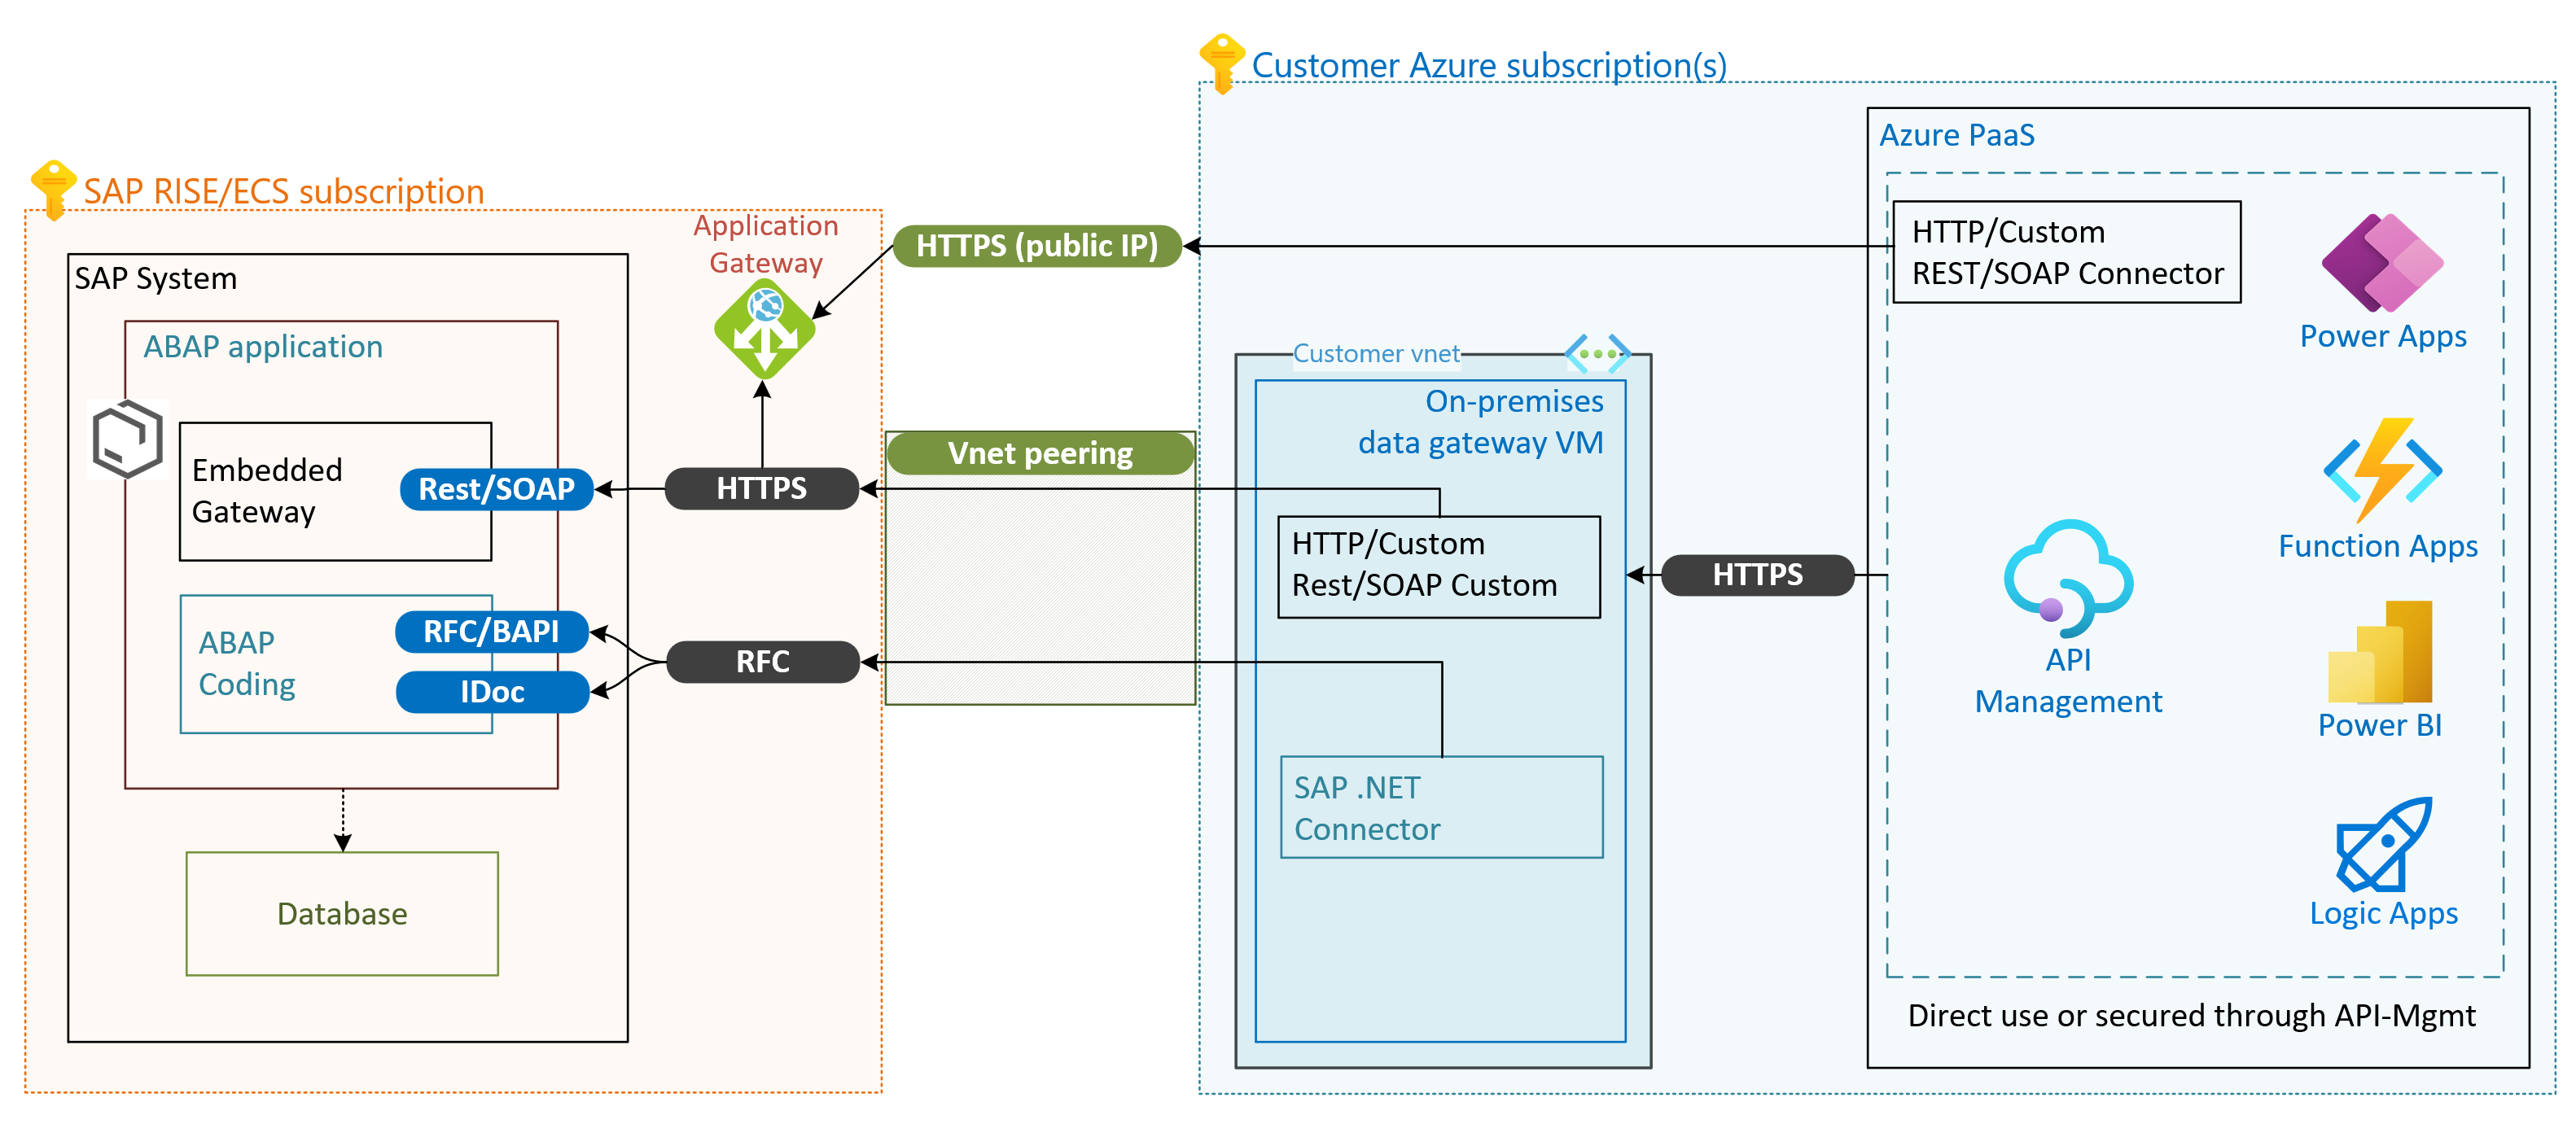 Azure şirket içi veri ağ geçidinden ve bağlı Azure hizmetlerinden erişilen SAP RISE/ECS.